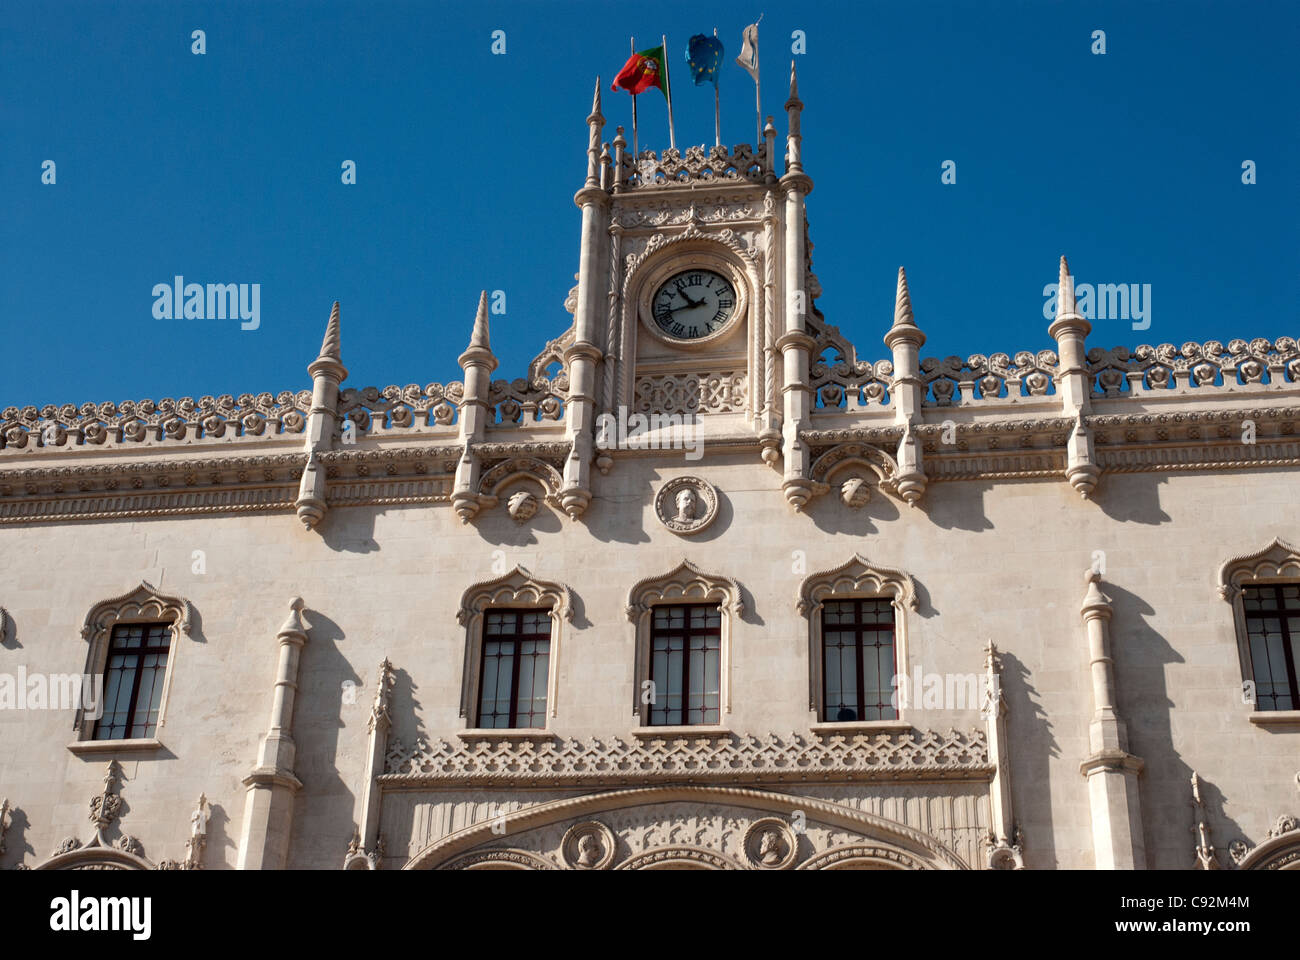 La fachada de la estación de Rossio, en Extremadura, cerca de Lisboa, es una fina estructura barroca, con un gran reloj, y mástiles. Foto de stock